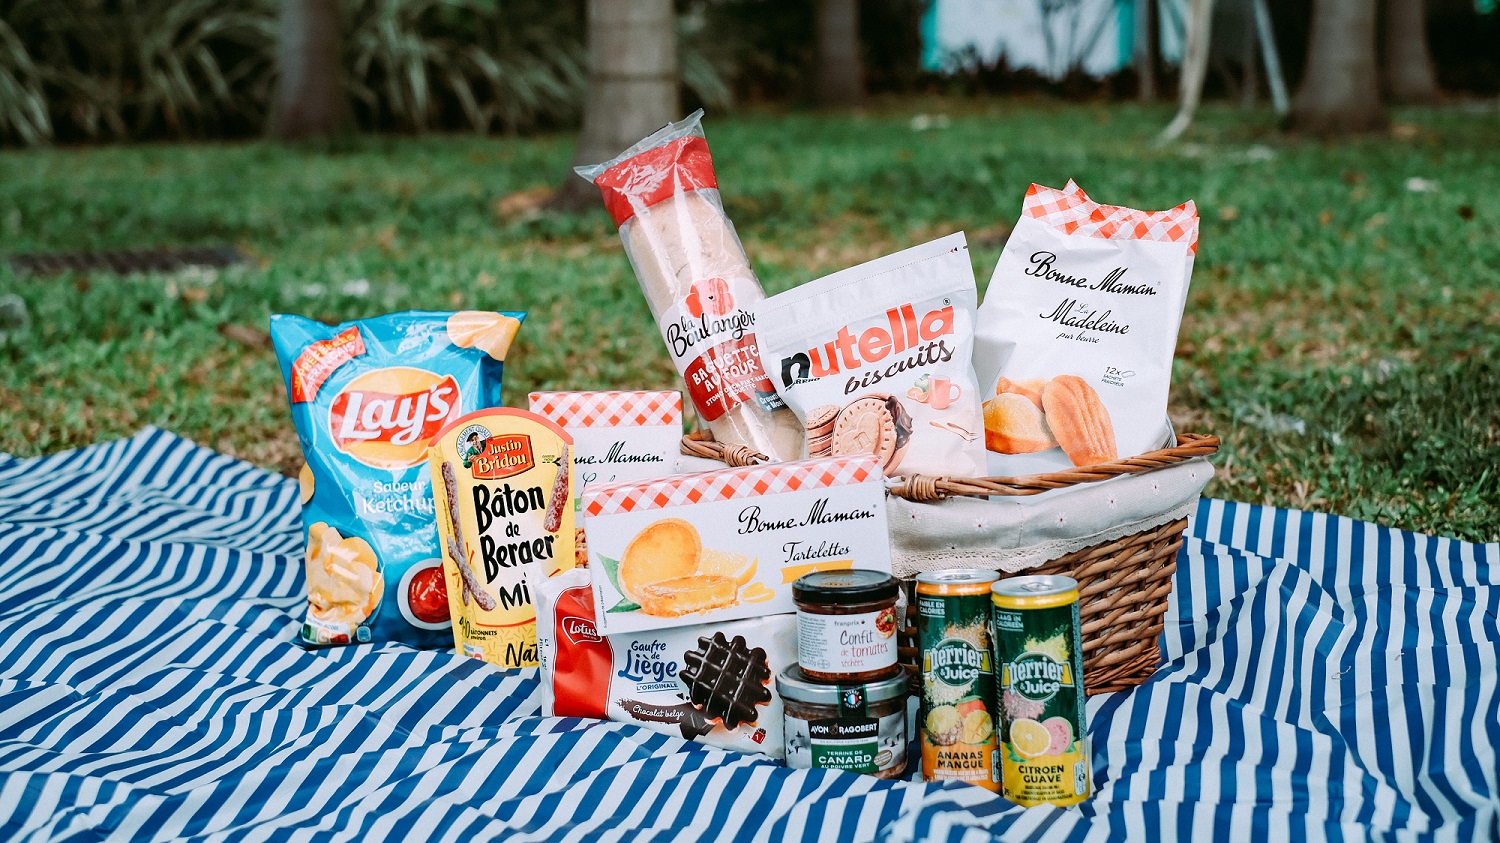 【購物】法式超市野餐節 推出食品折扣